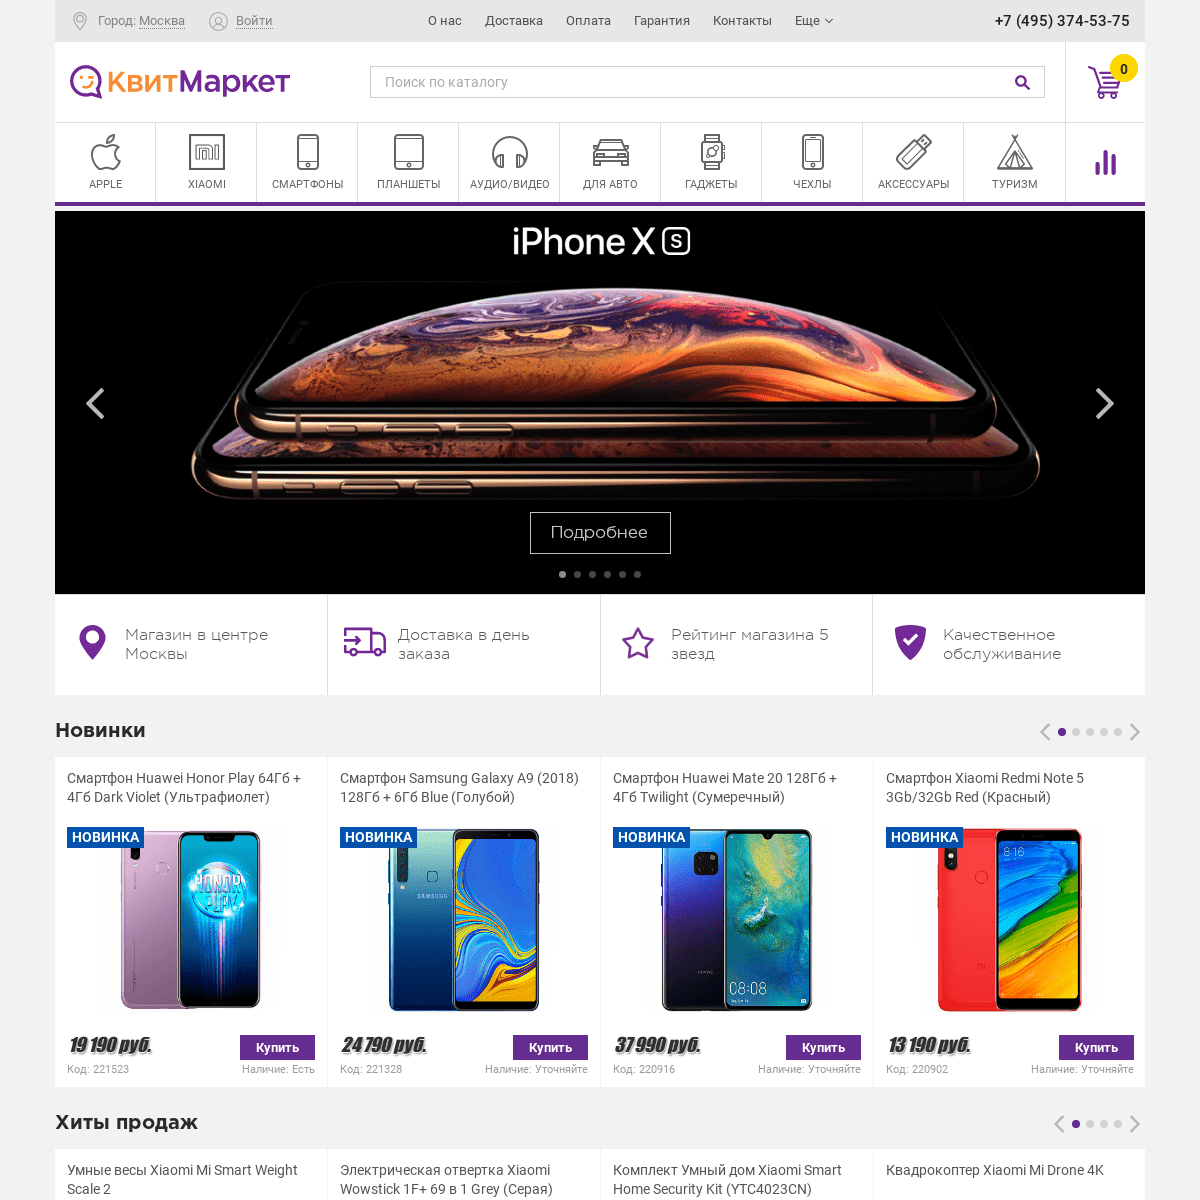 КвитМаркет - интернет-магазин техники Apple, Xiaomi, Samsung, GoPro, мобильной электроники, гаджетов и аксессуаров по выгодной ц